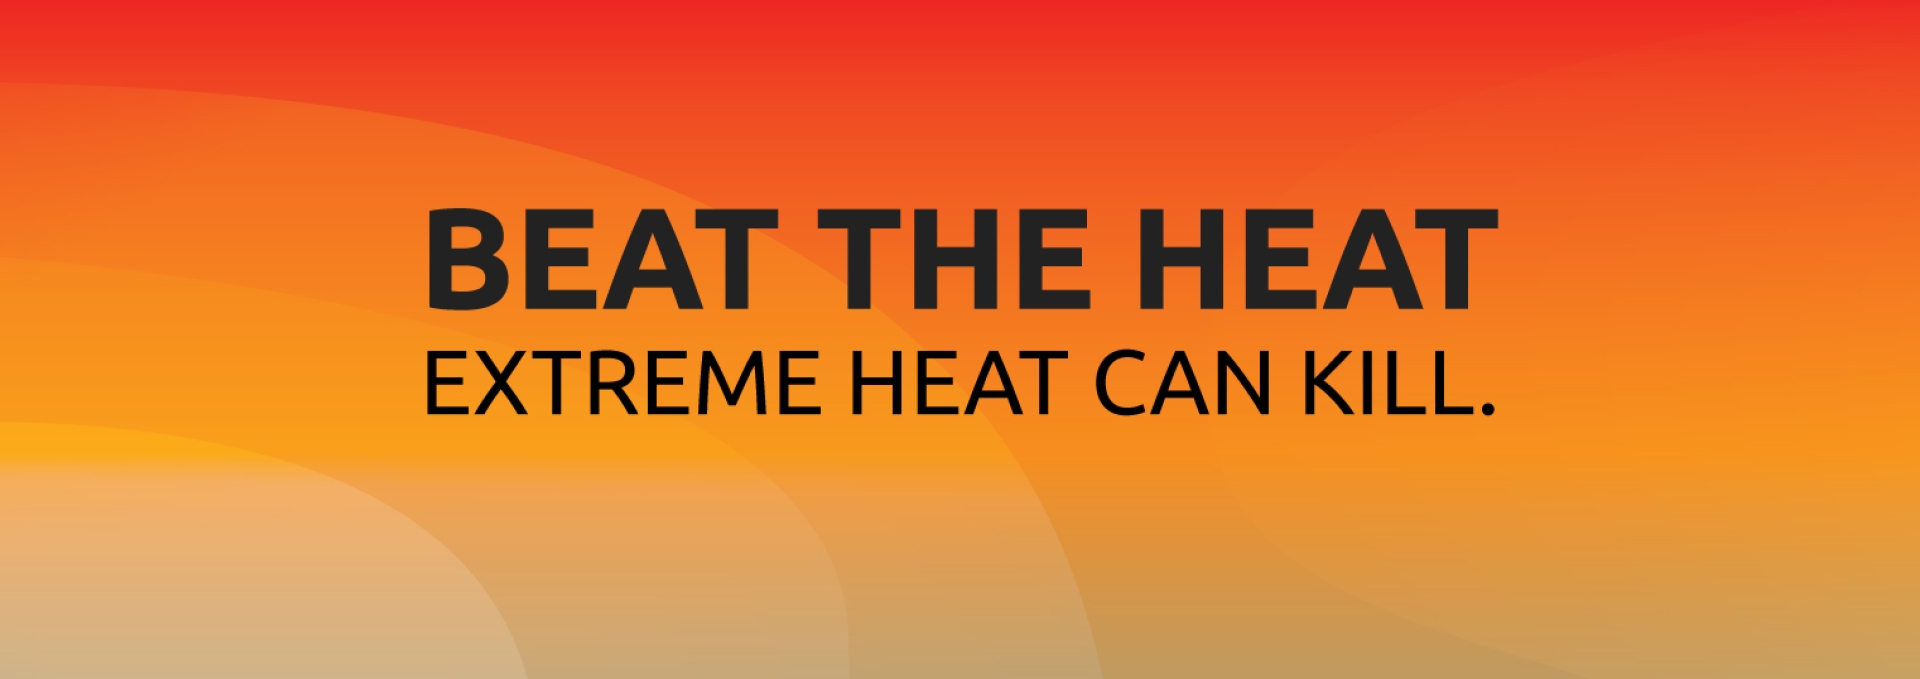 Beat the Heat. Extreme Heat can Kill.